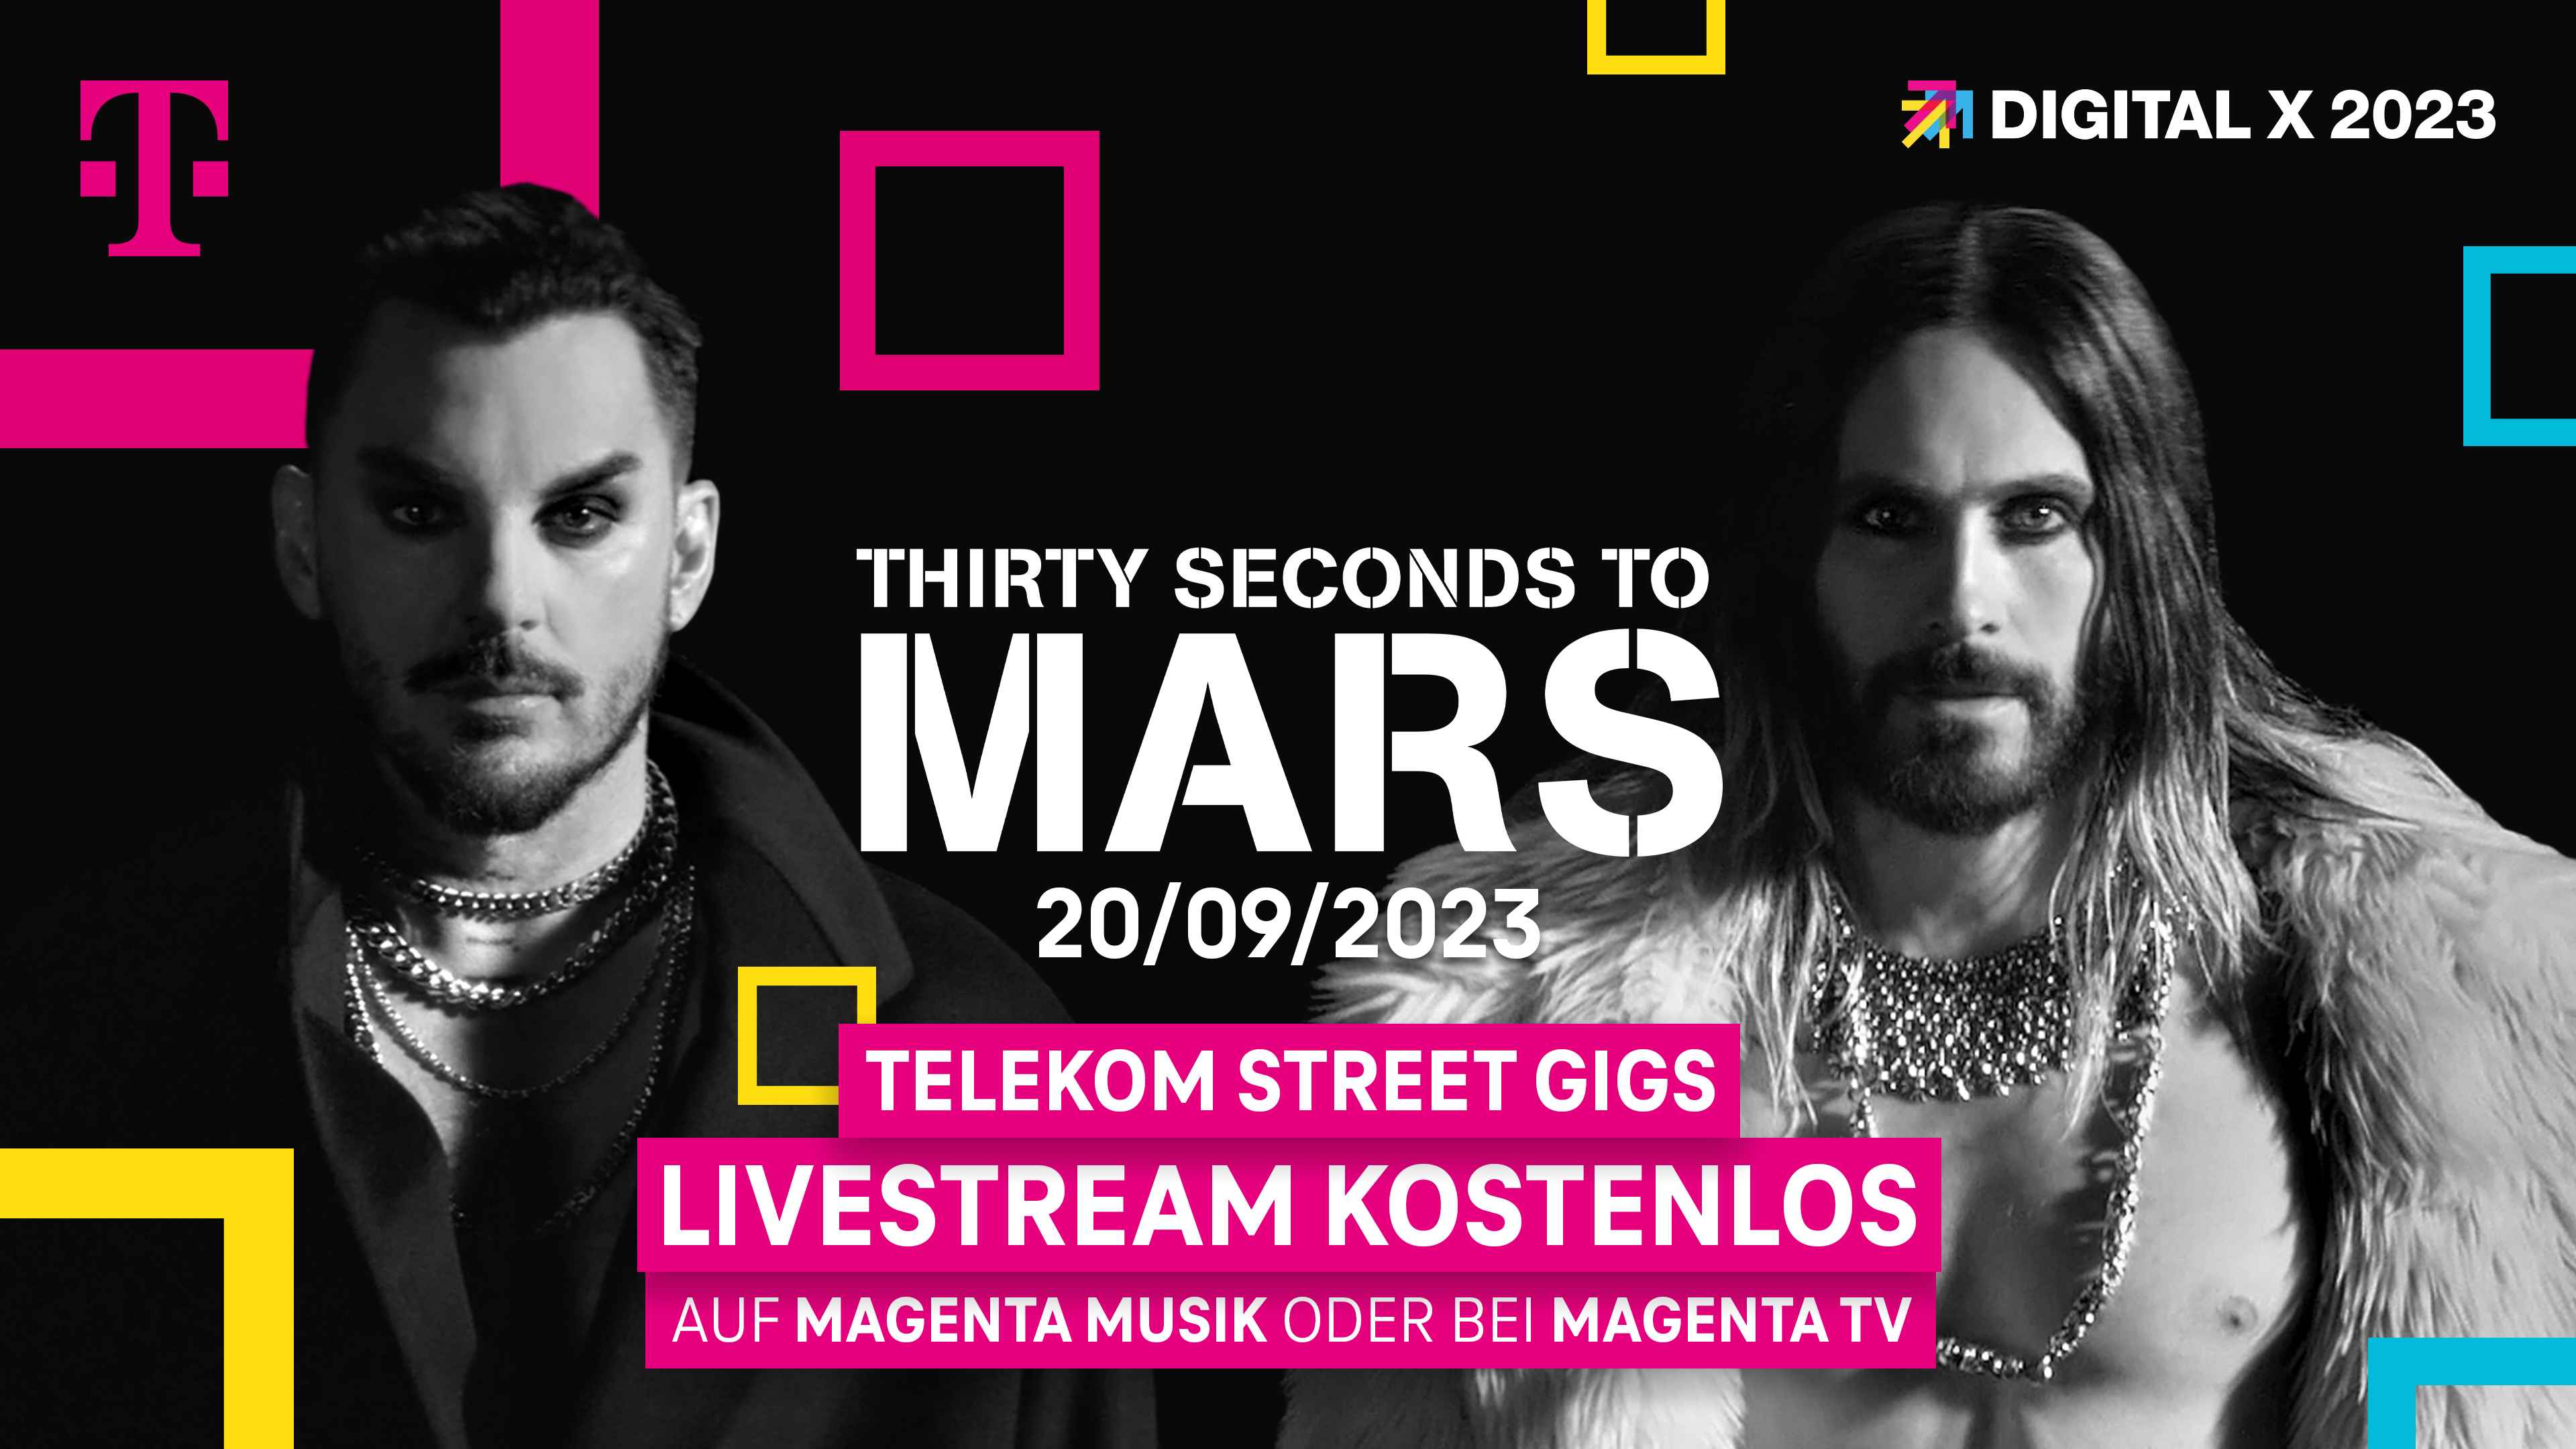 Thirty Seconds to Mars präsentieren auf der Digital X exklusiv ihr neues Album Deutsche Telekom